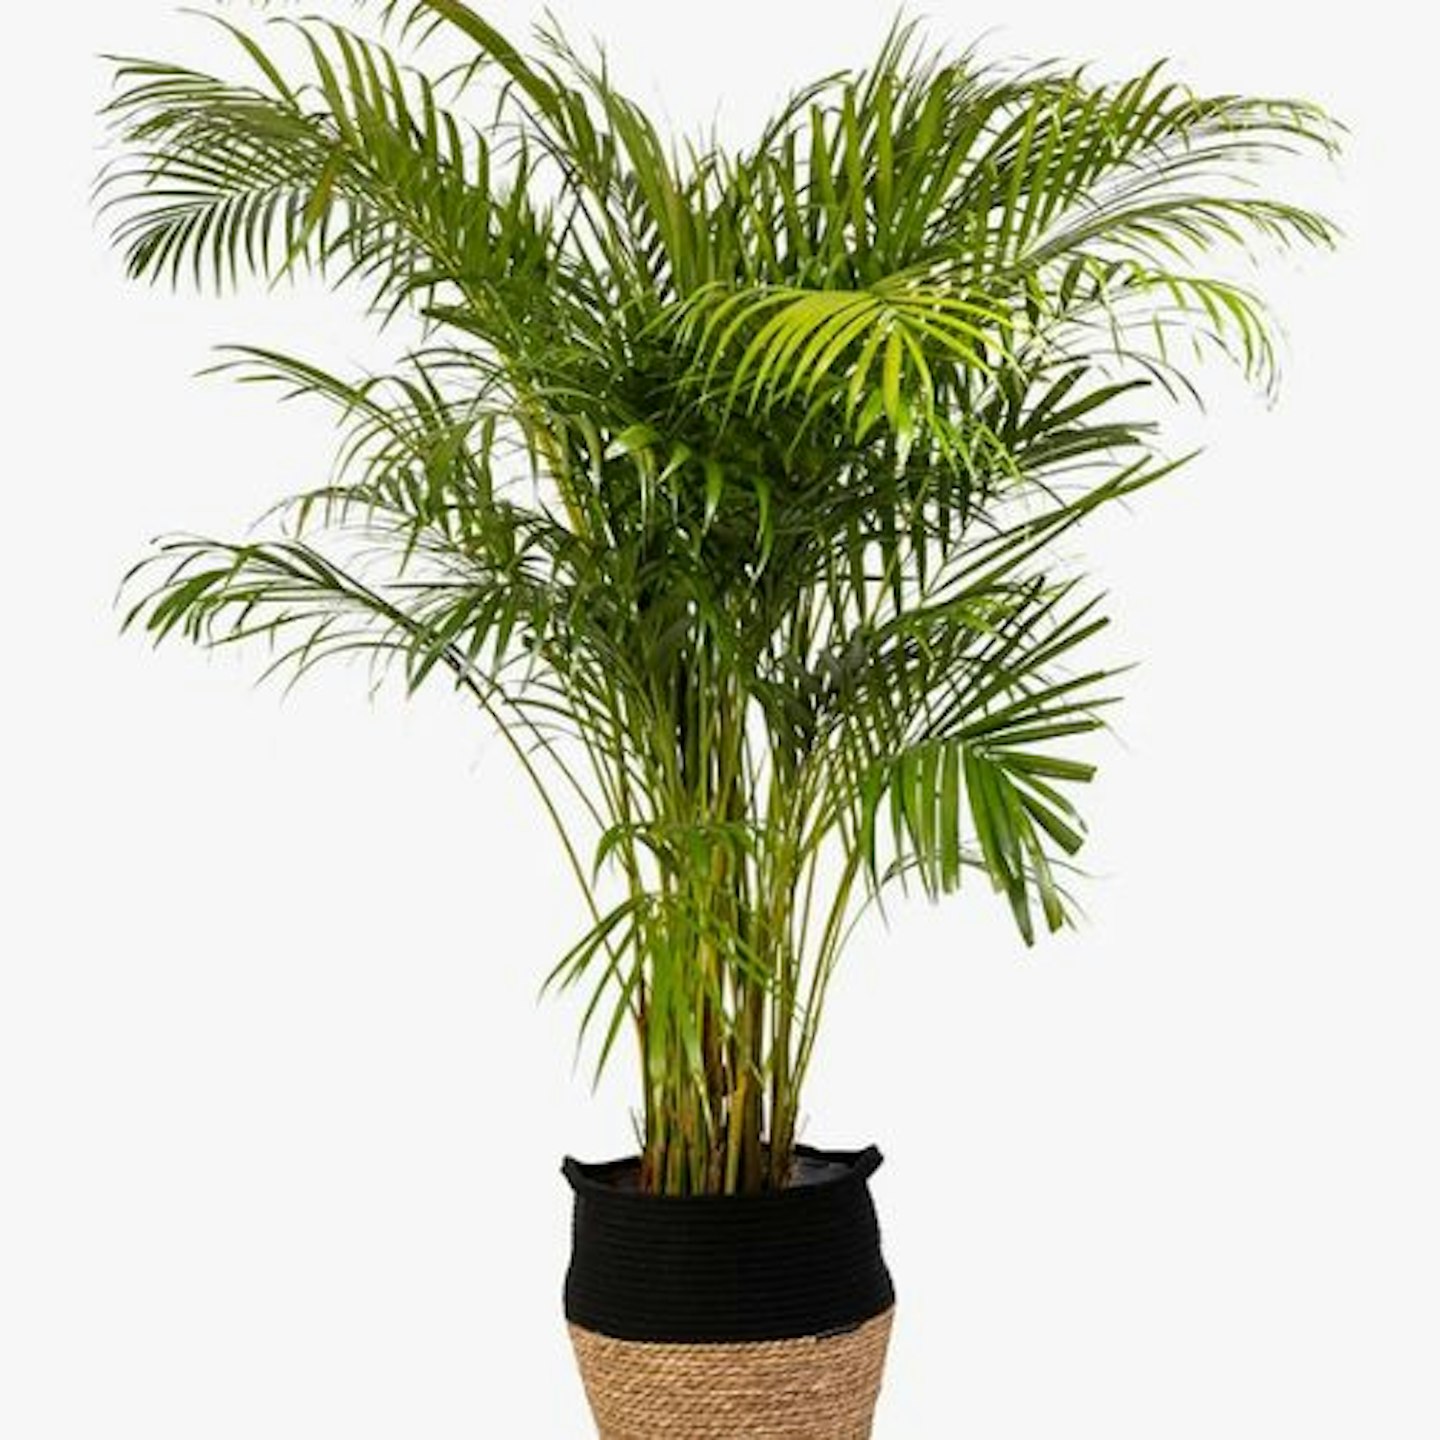 The Little Botanical Extra Large Areca Palm Plant & Basket